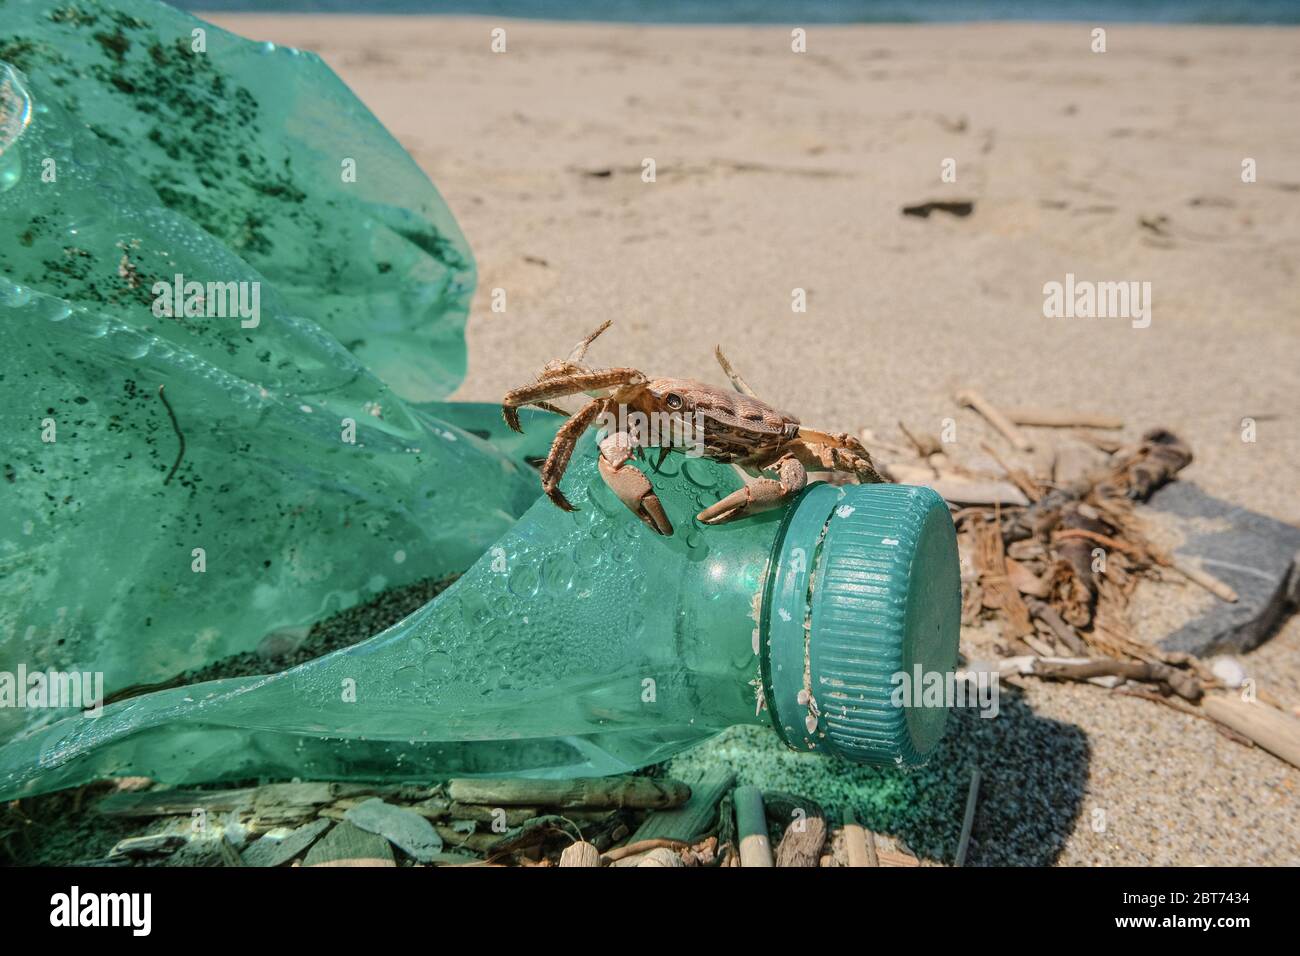 Meereskrabbe auf abgesandten Plastikflaschen auf verschmutztem sandigen Lebensraum der Küste Stockfoto